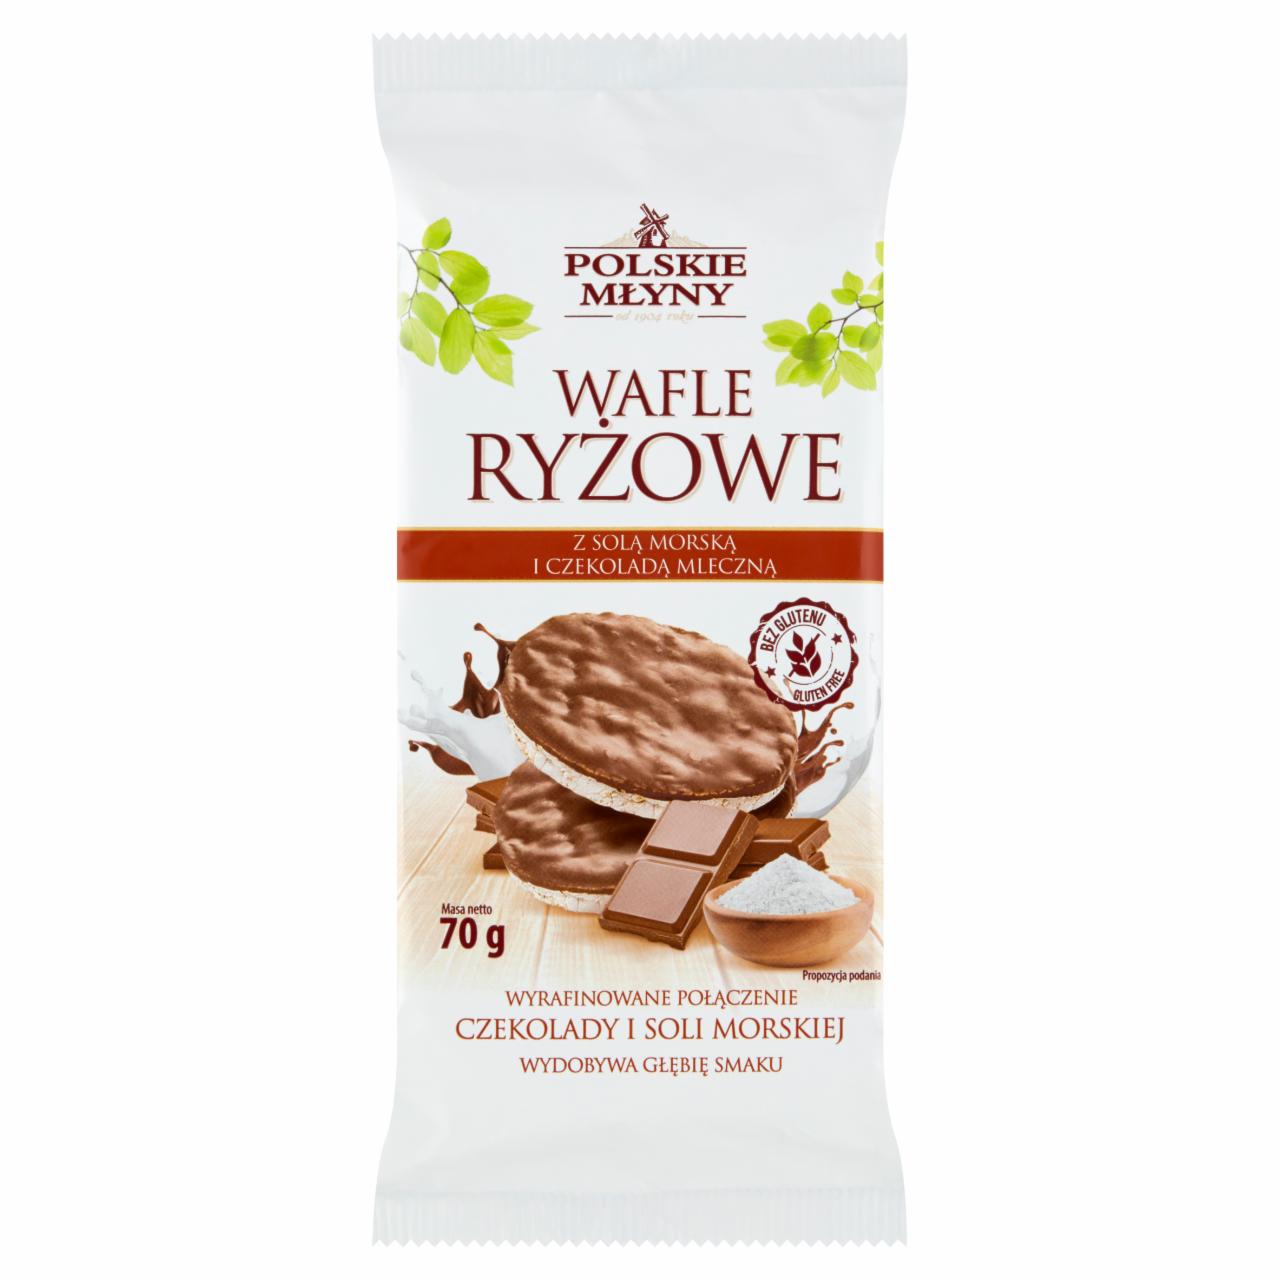 Zdjęcia - Polskie Młyny Wafle ryżowe z solą morską i czekoladą mleczną 70 g